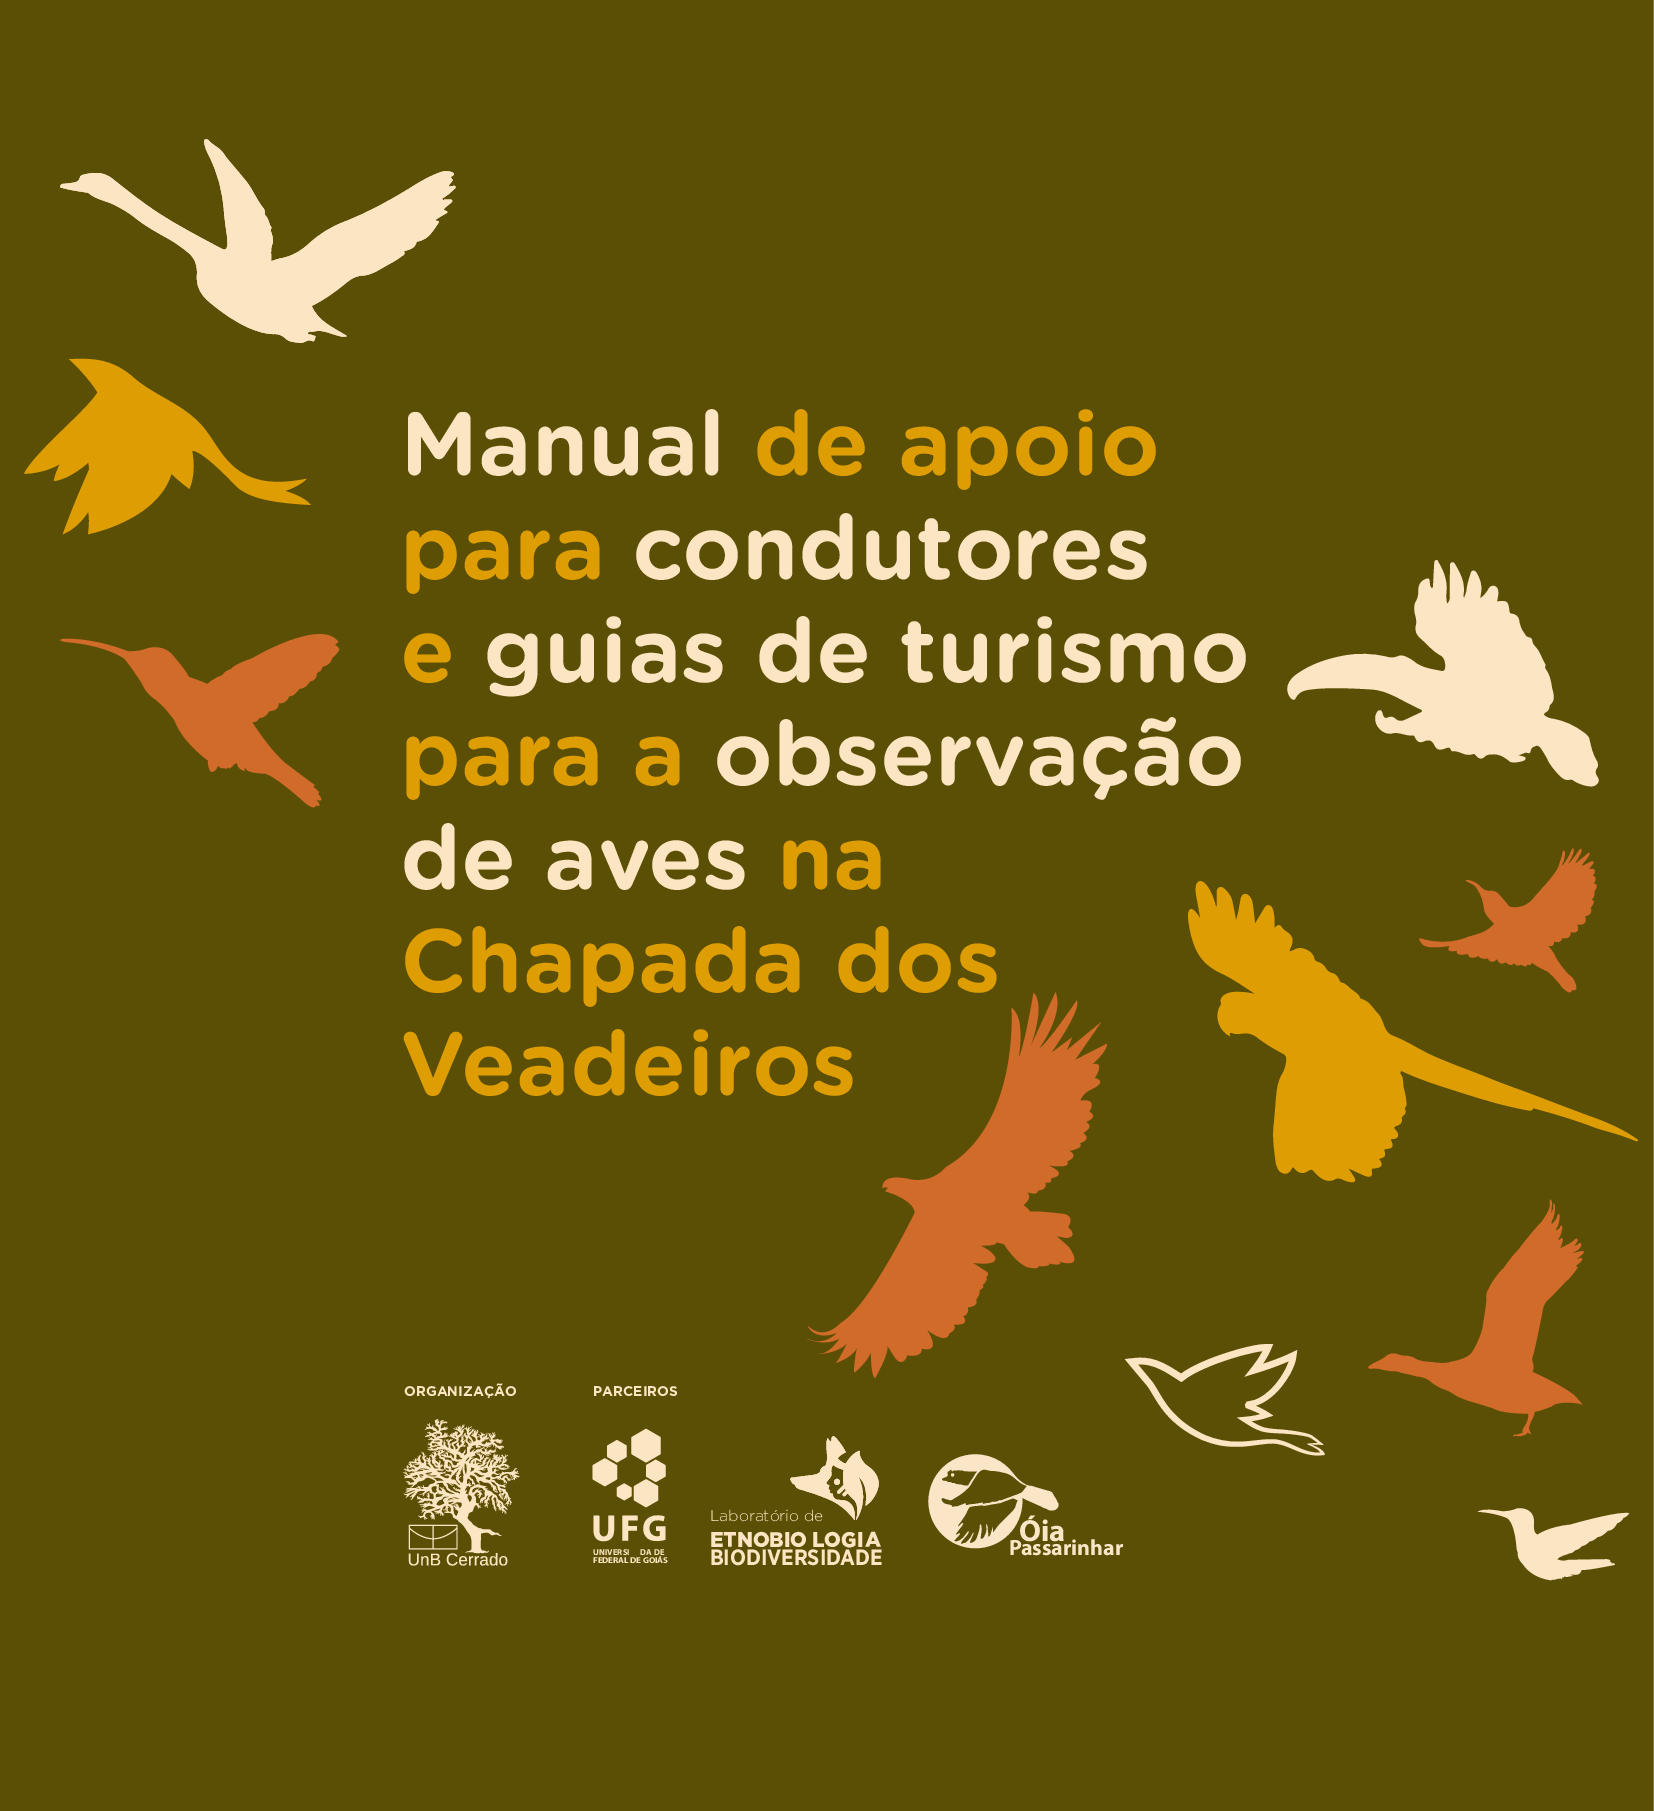 Manual de apoio para condutores e guias de turismo para a observao de aves na Chapada dos Veadeiro